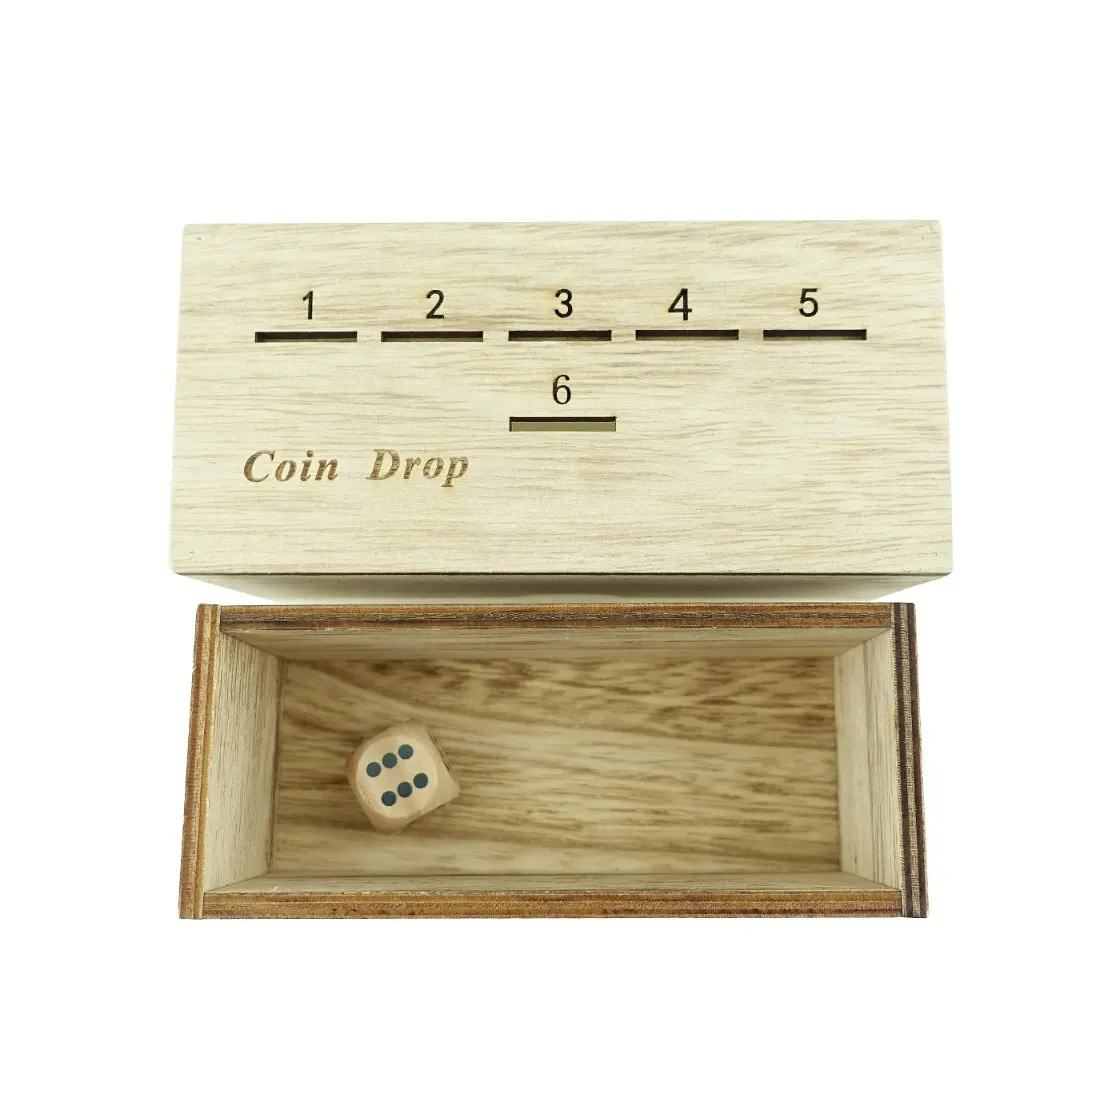 カスタムデザイン楽しいボードコインゲームペニーゲームウッドボックス木製コインを持つ家族のためのシンプルな戦略的なコインドロップダイスゲーム